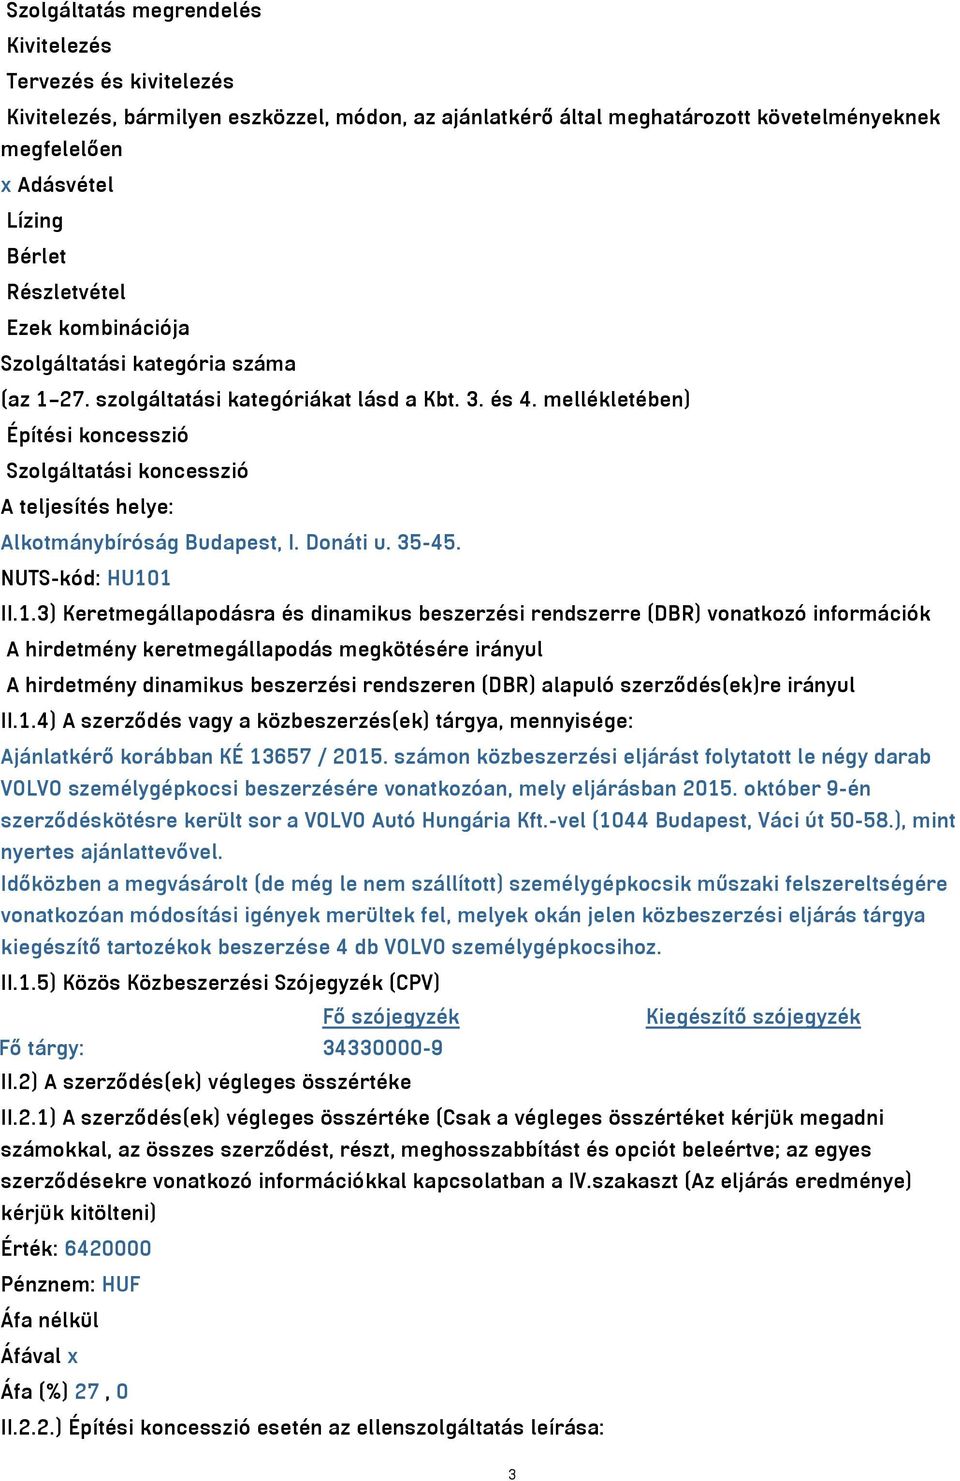 mellékletében) Építési koncesszió Szolgáltatási koncesszió A teljesítés helye: Alkotmánybíróság Budapest, I. Donáti u. 35-45. NUTS-kód: HU10